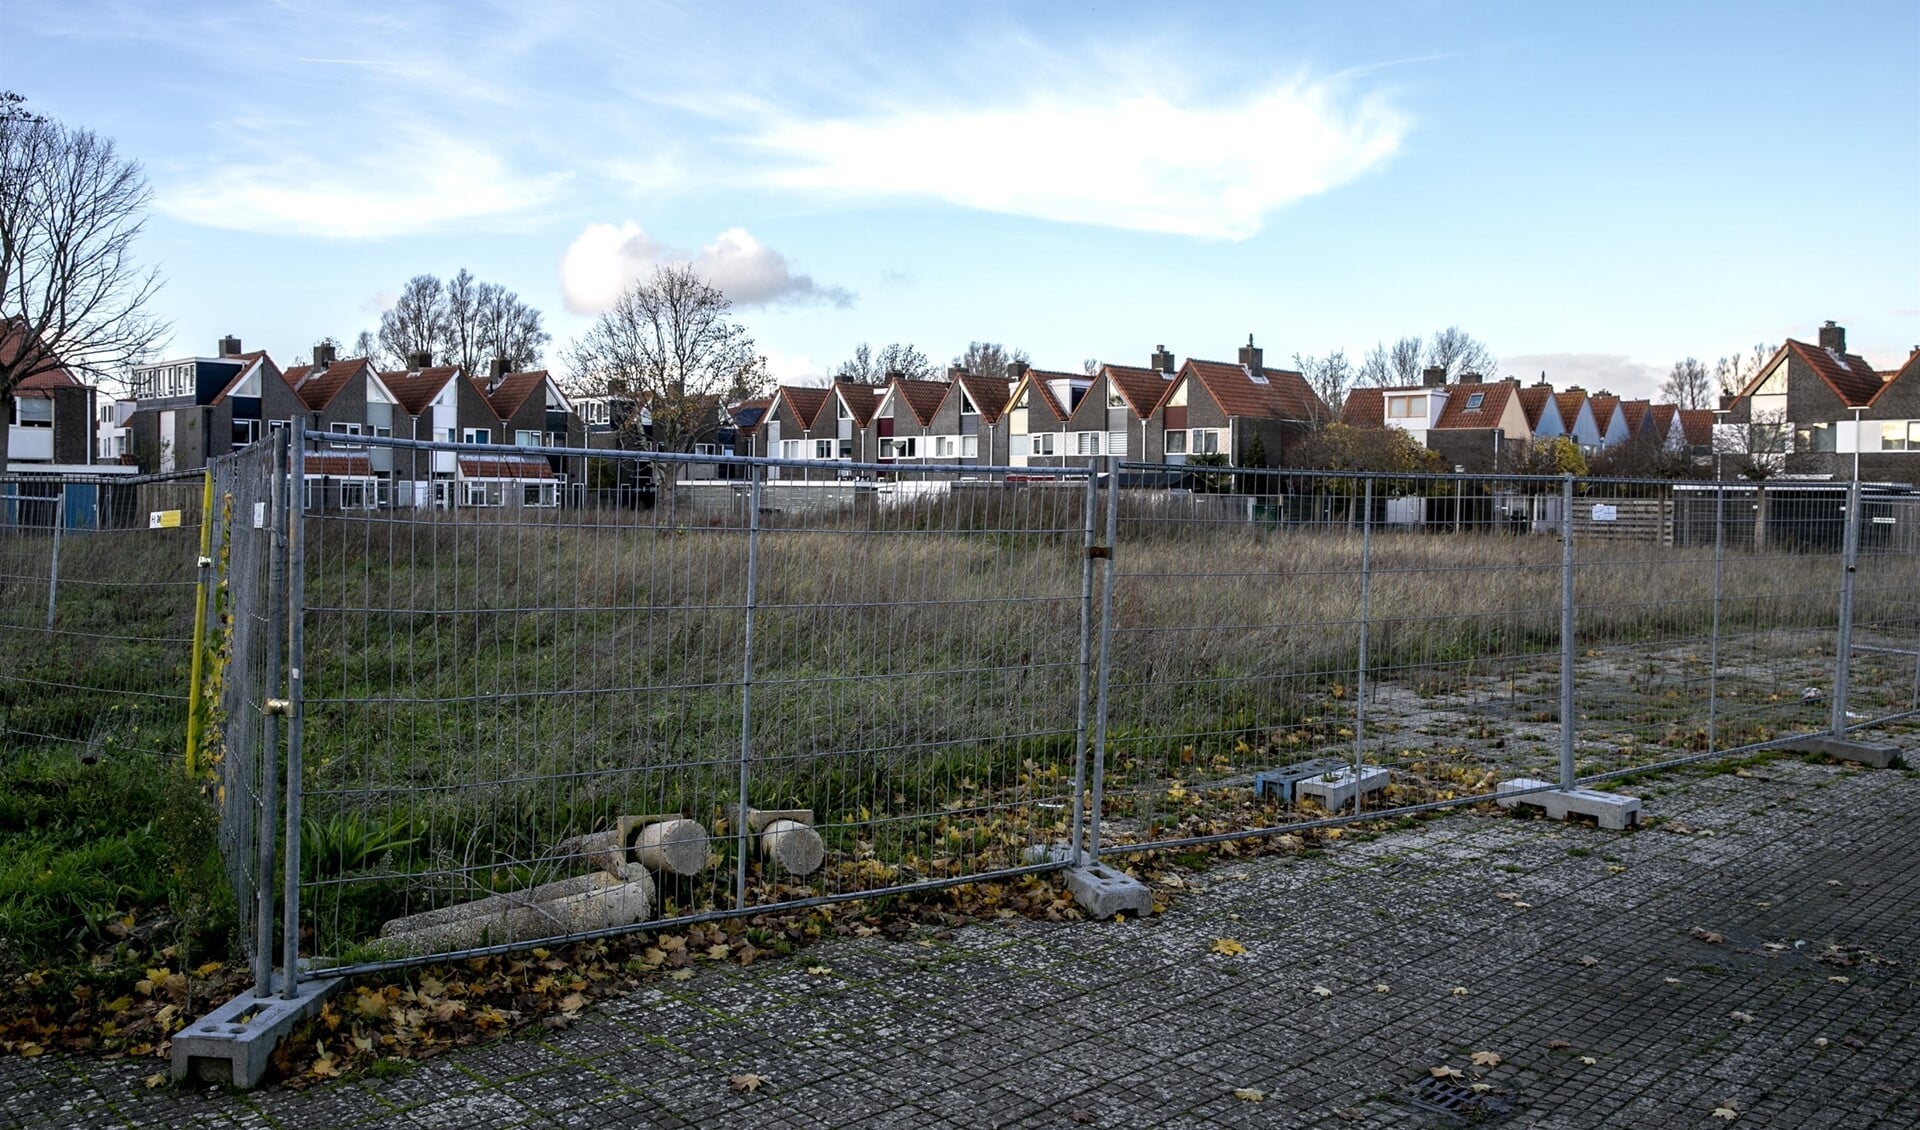 Het braakliggende terrein waar voorheen jarenlang het wijkgebouw in de voormalige basisschool De Ploegschaar was gevestigd.